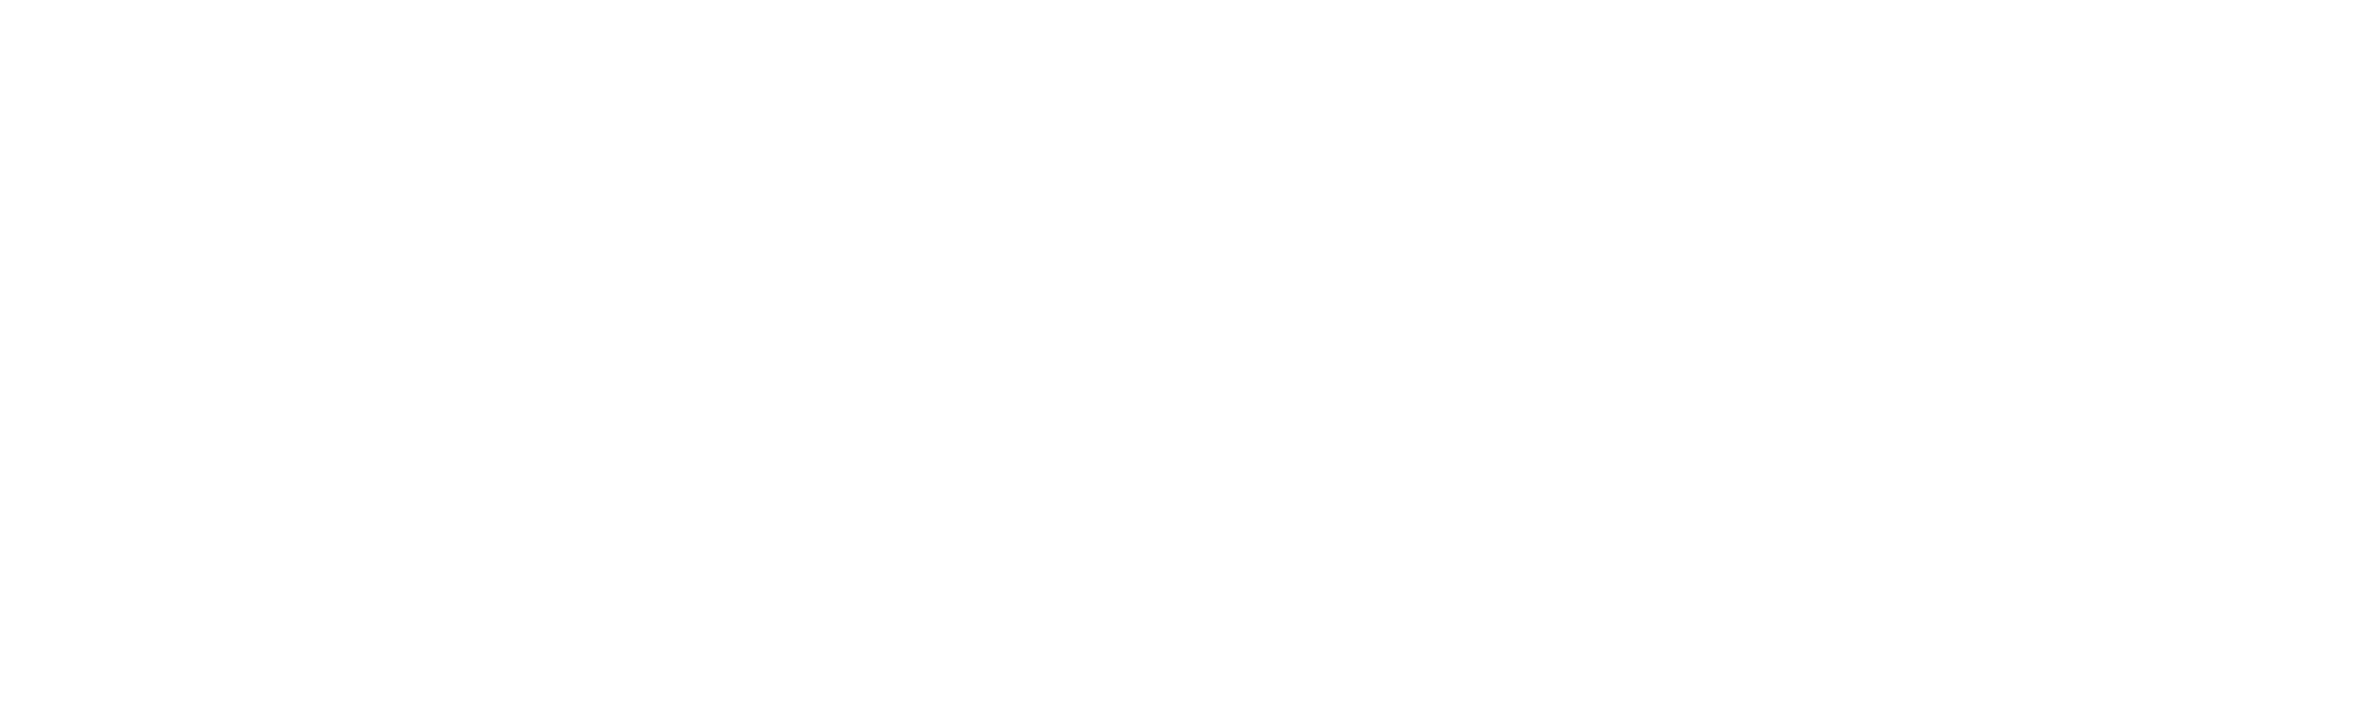 Spotify_Logo_CMYK_White